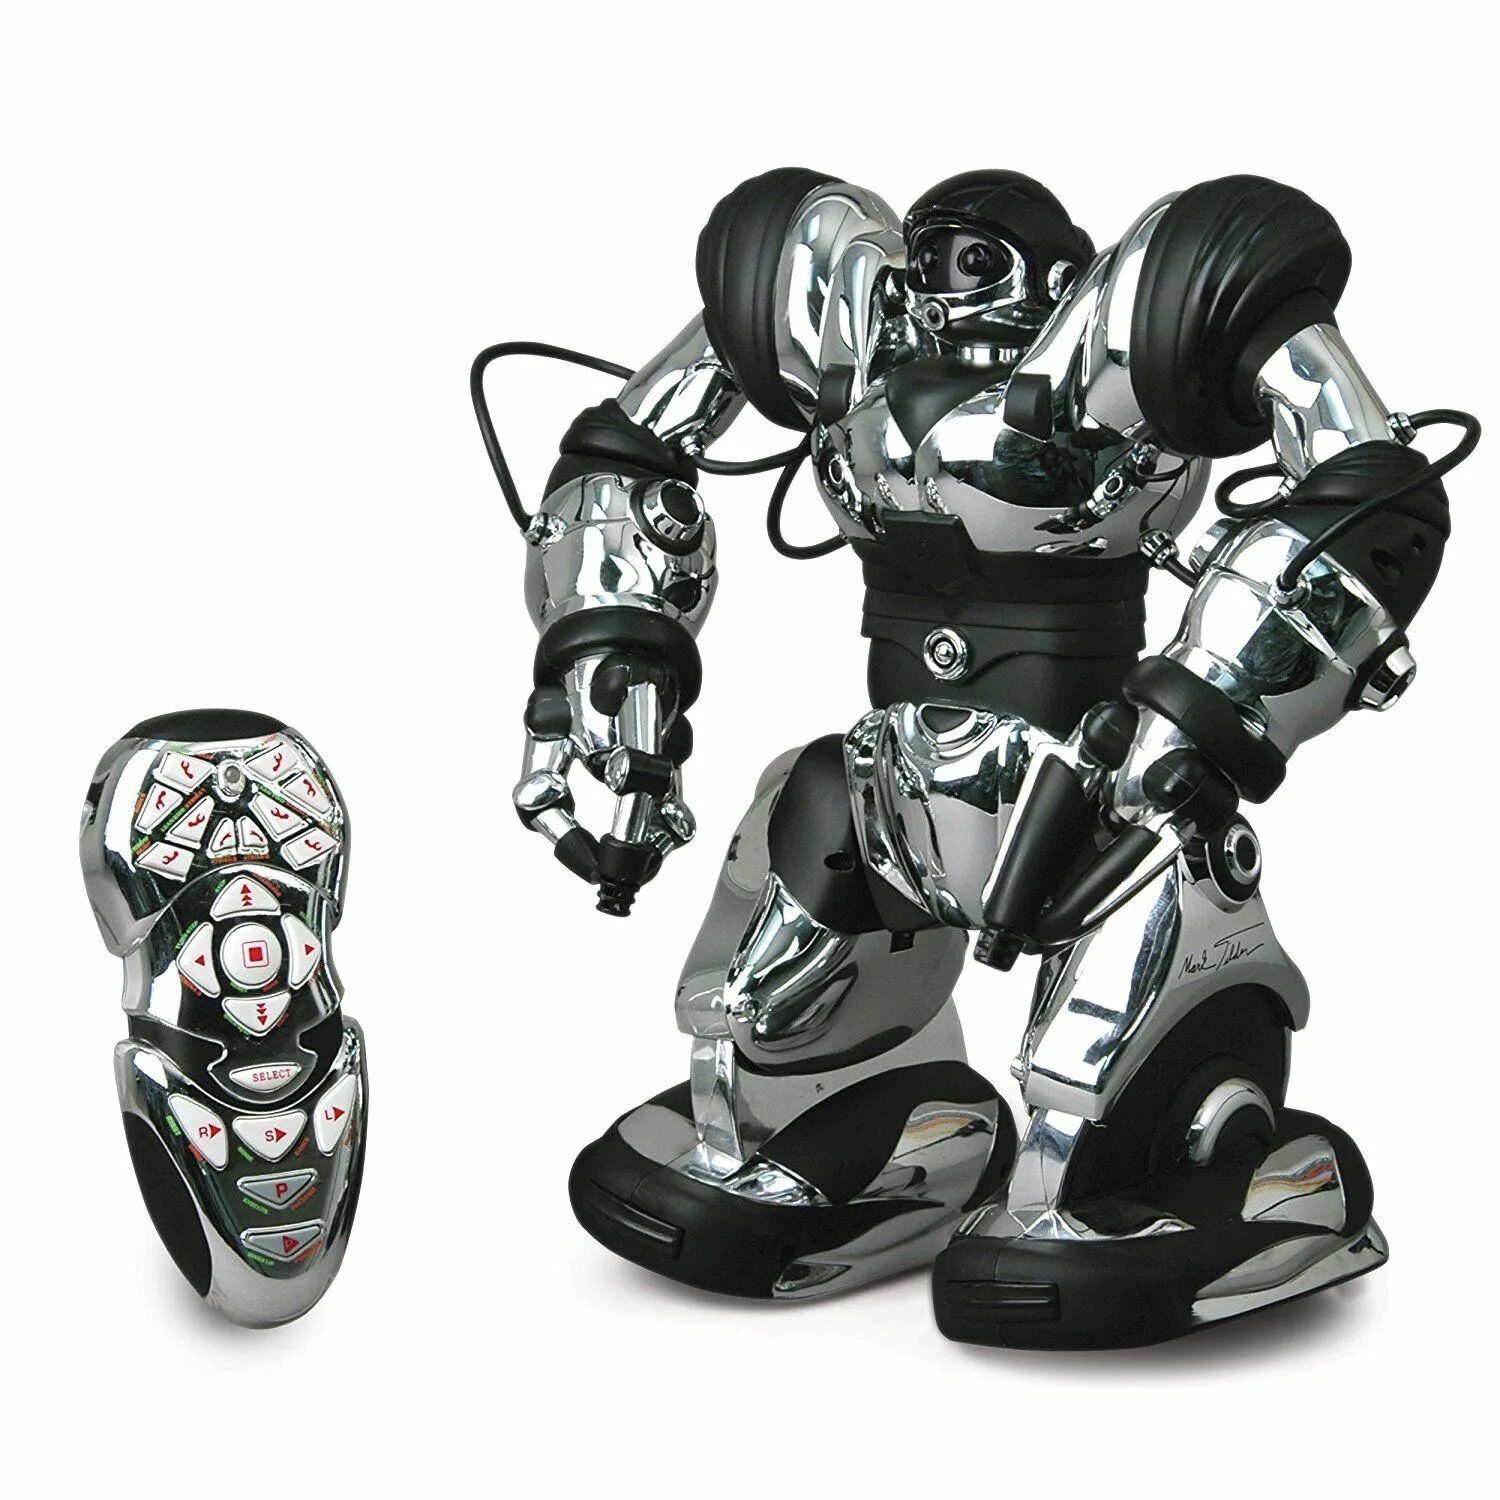 Купить робота на пульте. Робот WOWWEE Robosapien. Робот WOWWEE Robosapien 8083. Робот WOWWEE Mini Robosapien. Интерактивная игрушка робот WOWWEE Robosapien Blue.